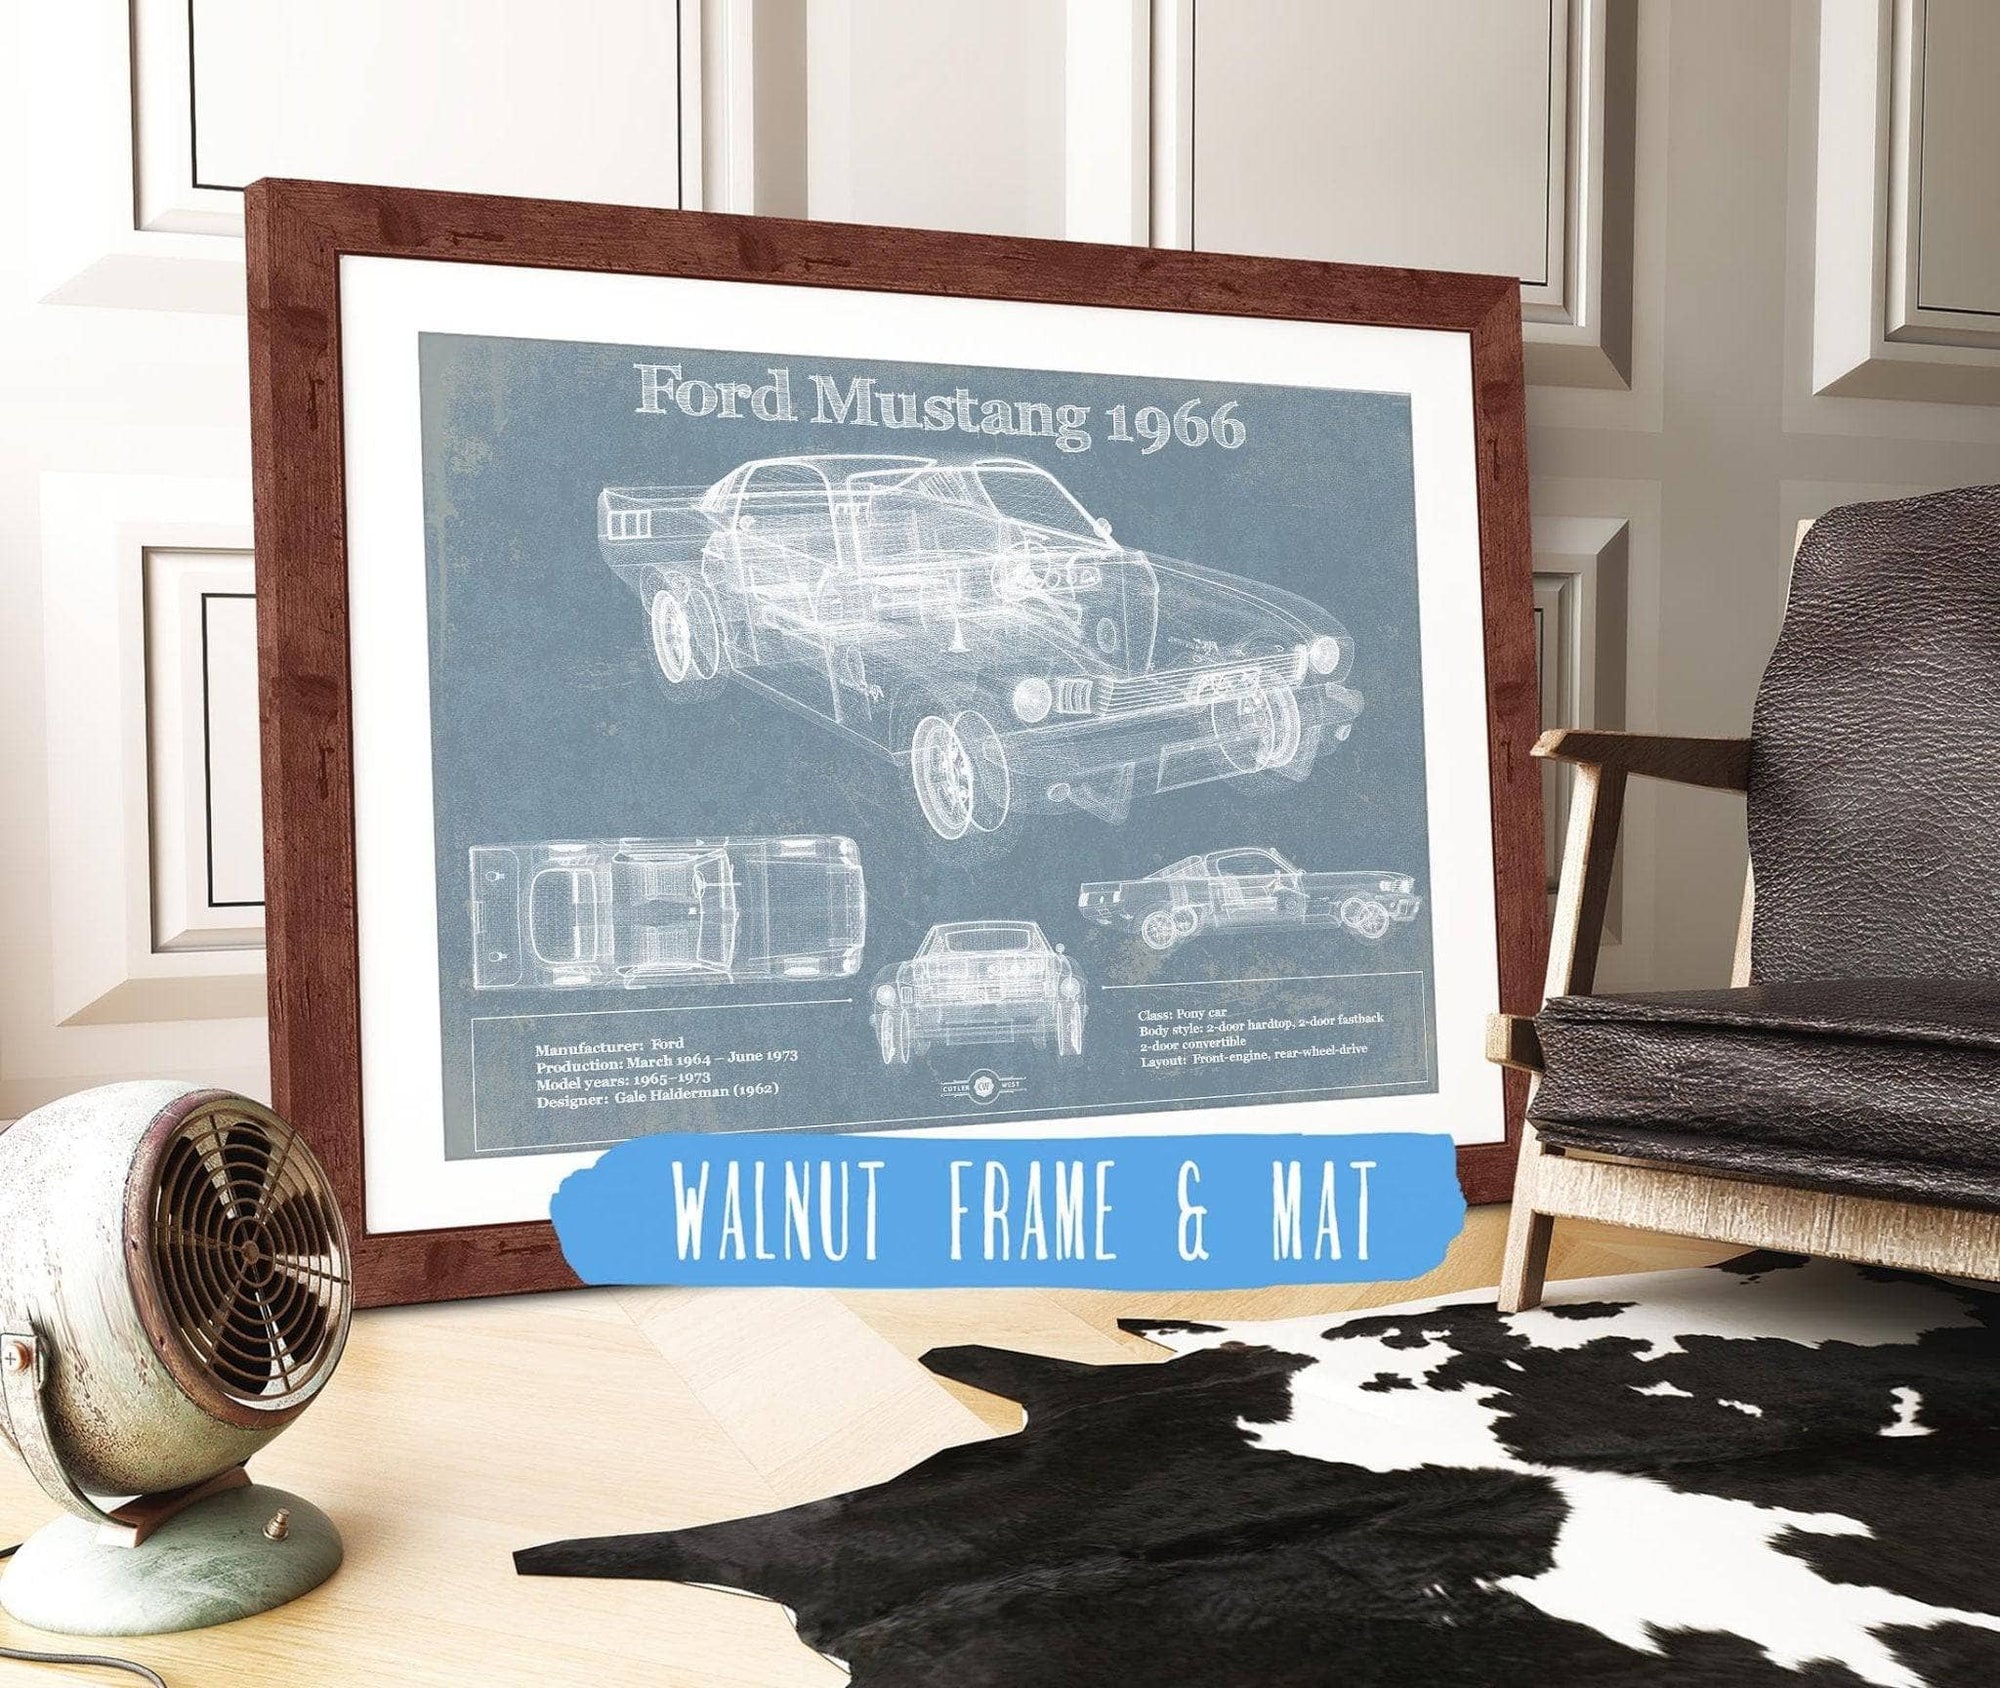 Cutler West Ford Collection 14" x 11" / Walnut Frame & Mat Ford Mustang 1966 Original Blueprint Art 845000229-TOP